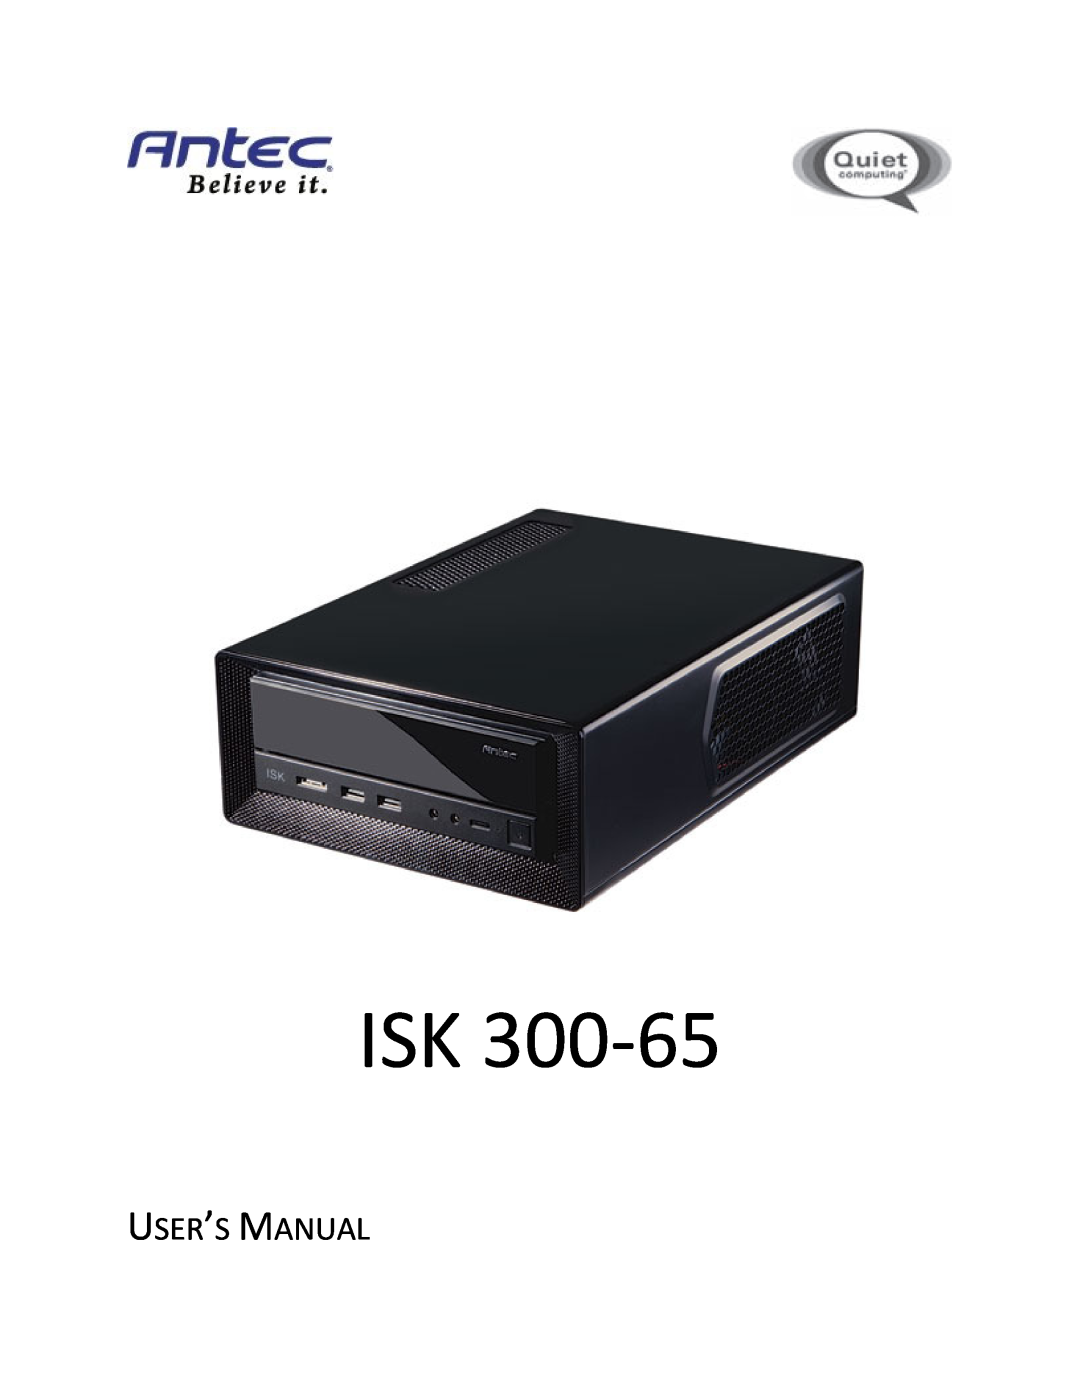 Antec ISK 300-65 user manual User’S Manual 